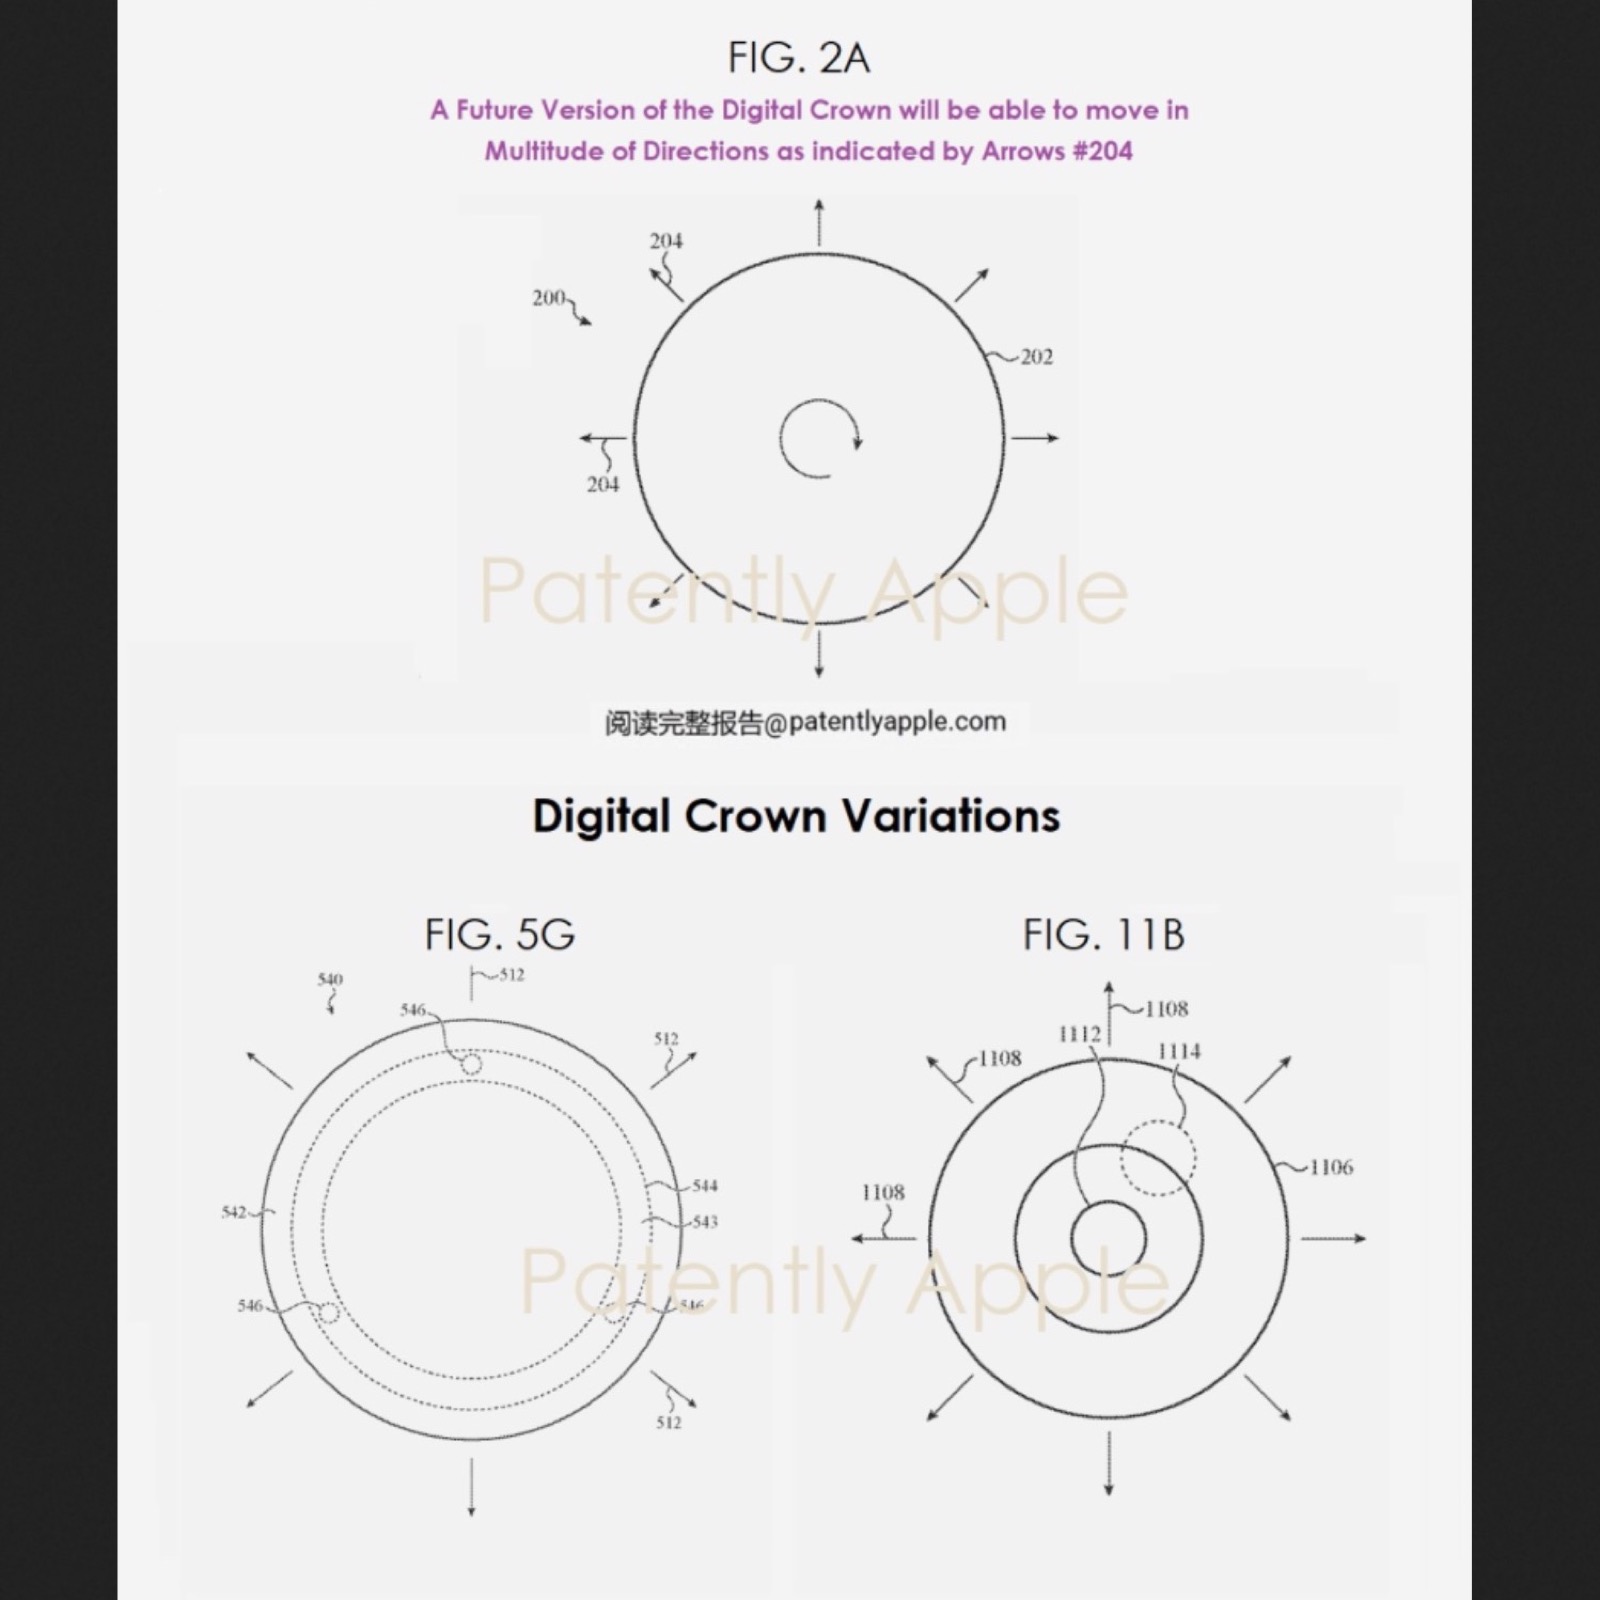 La Corona Digitale 2.0 di Apple si muoverà come un joystick